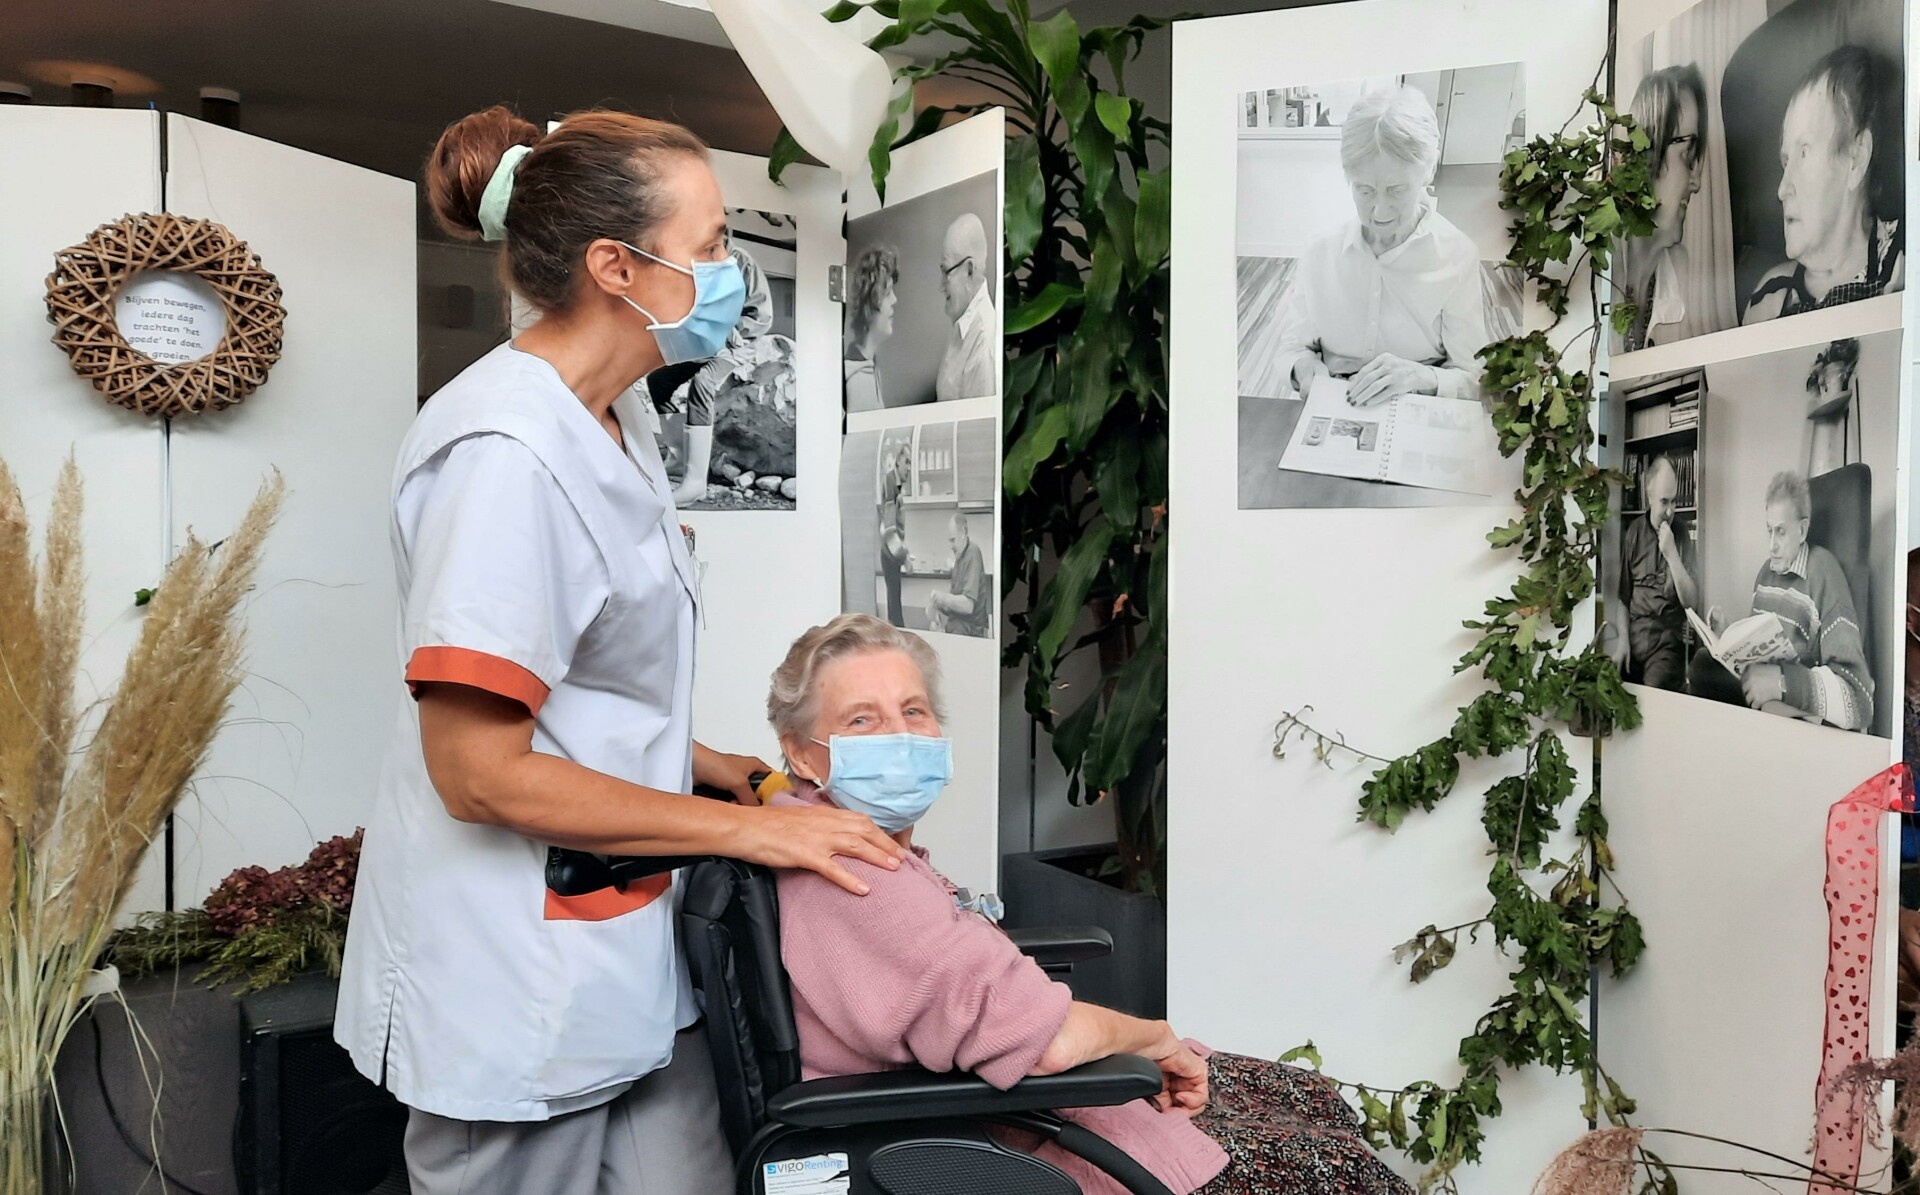 feedback optocht Uitbarsten Fototentoonstelling “dementie heeft vele gezichten” in WZC Henri Vander  Stokken | Persinfo